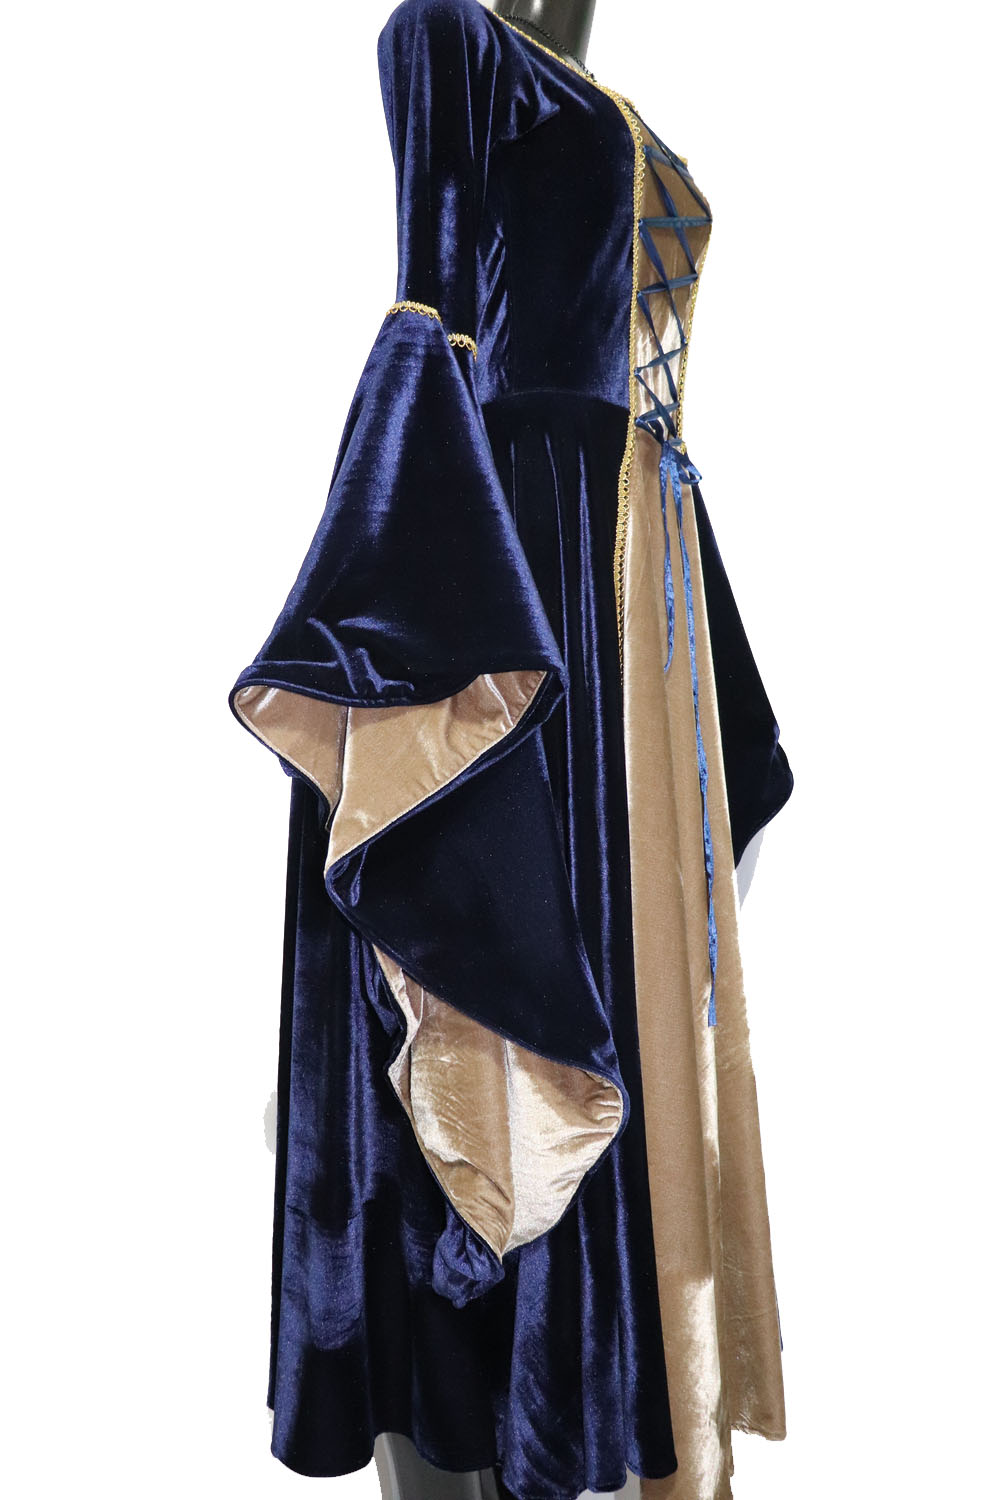 Vestido Rainha Elfa Medieval Azul com Bege